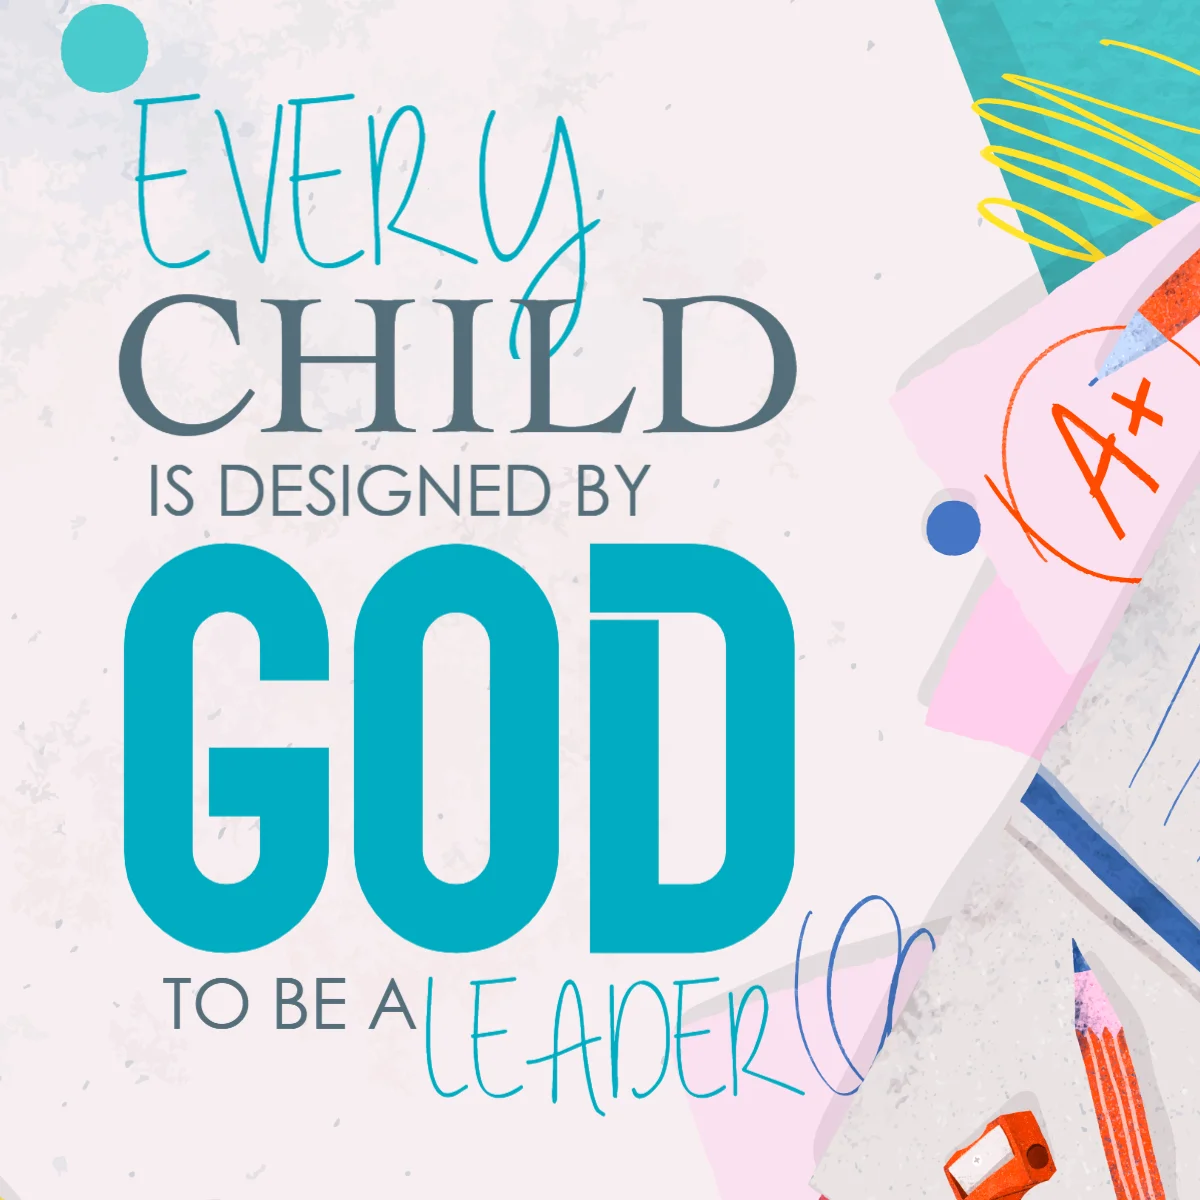 모든 어린이는 하나님에 의해 디자인되었습니다. Ministry Voice에서 무료로 제공하는 고품질 어린이 교회 그래픽